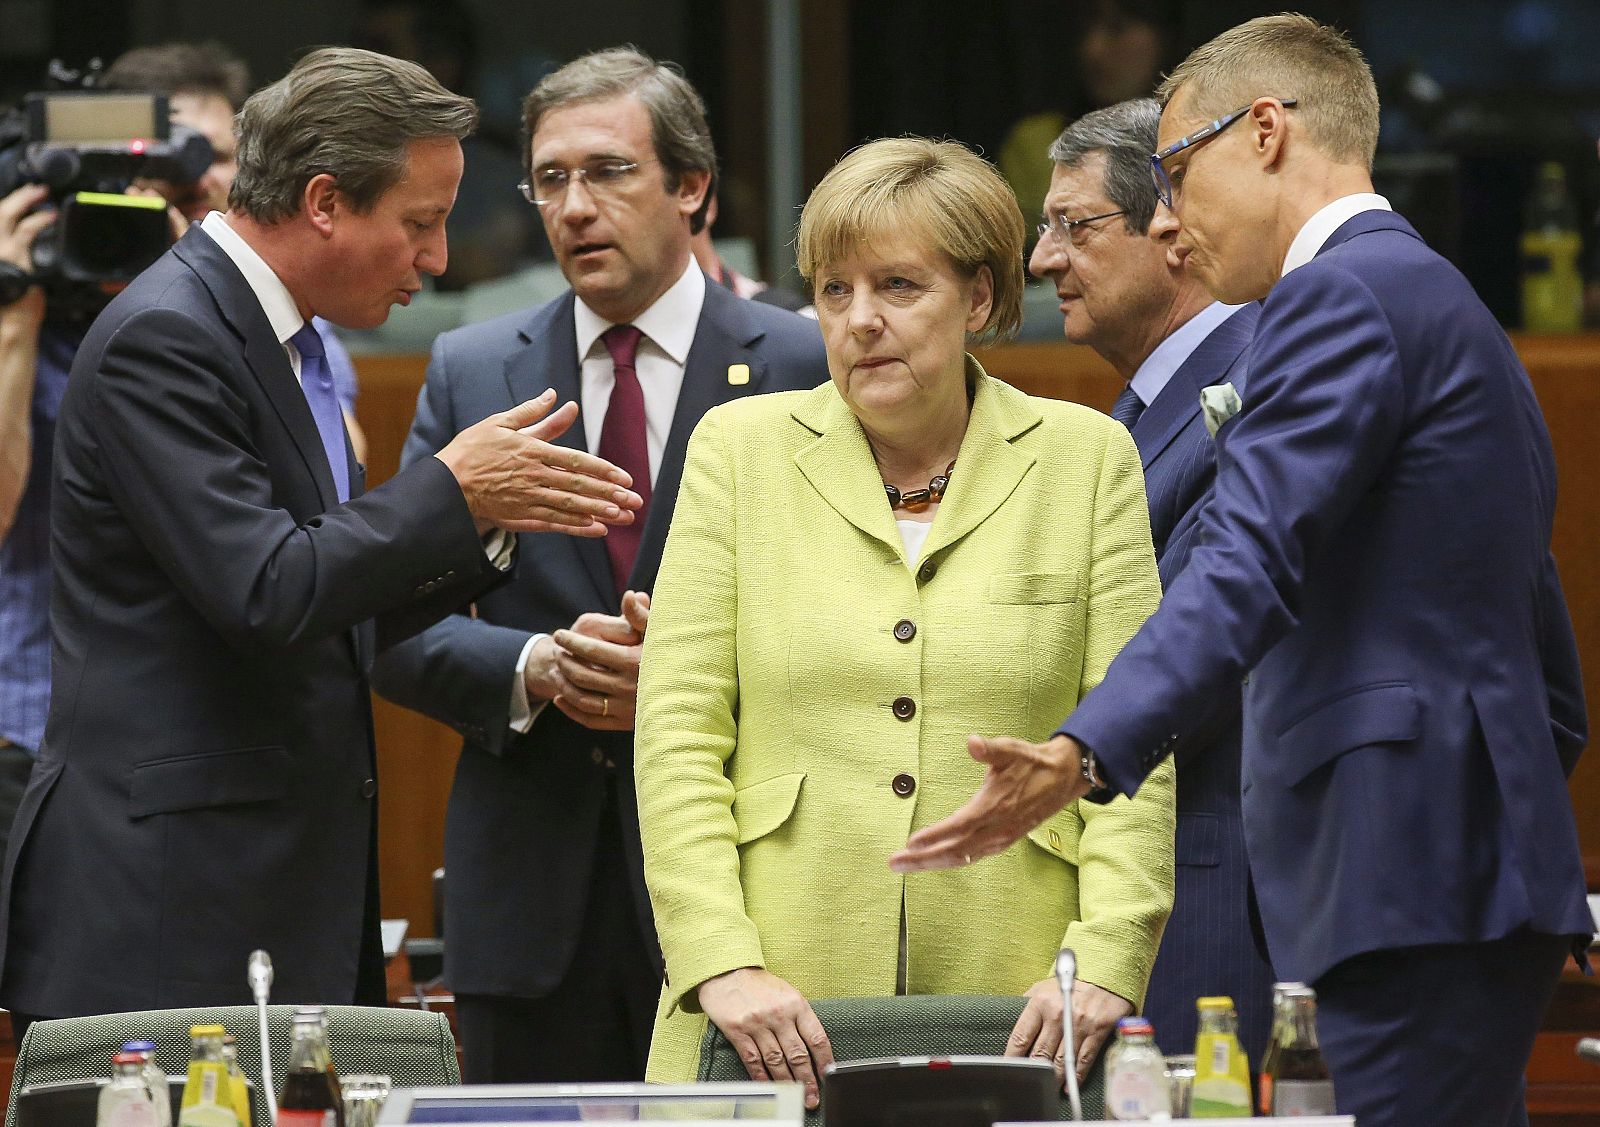 Merkel escucha al primer ministro finlandés, mientras Cameron debate con el primer ministro de Portugal y el presidente de Chipre